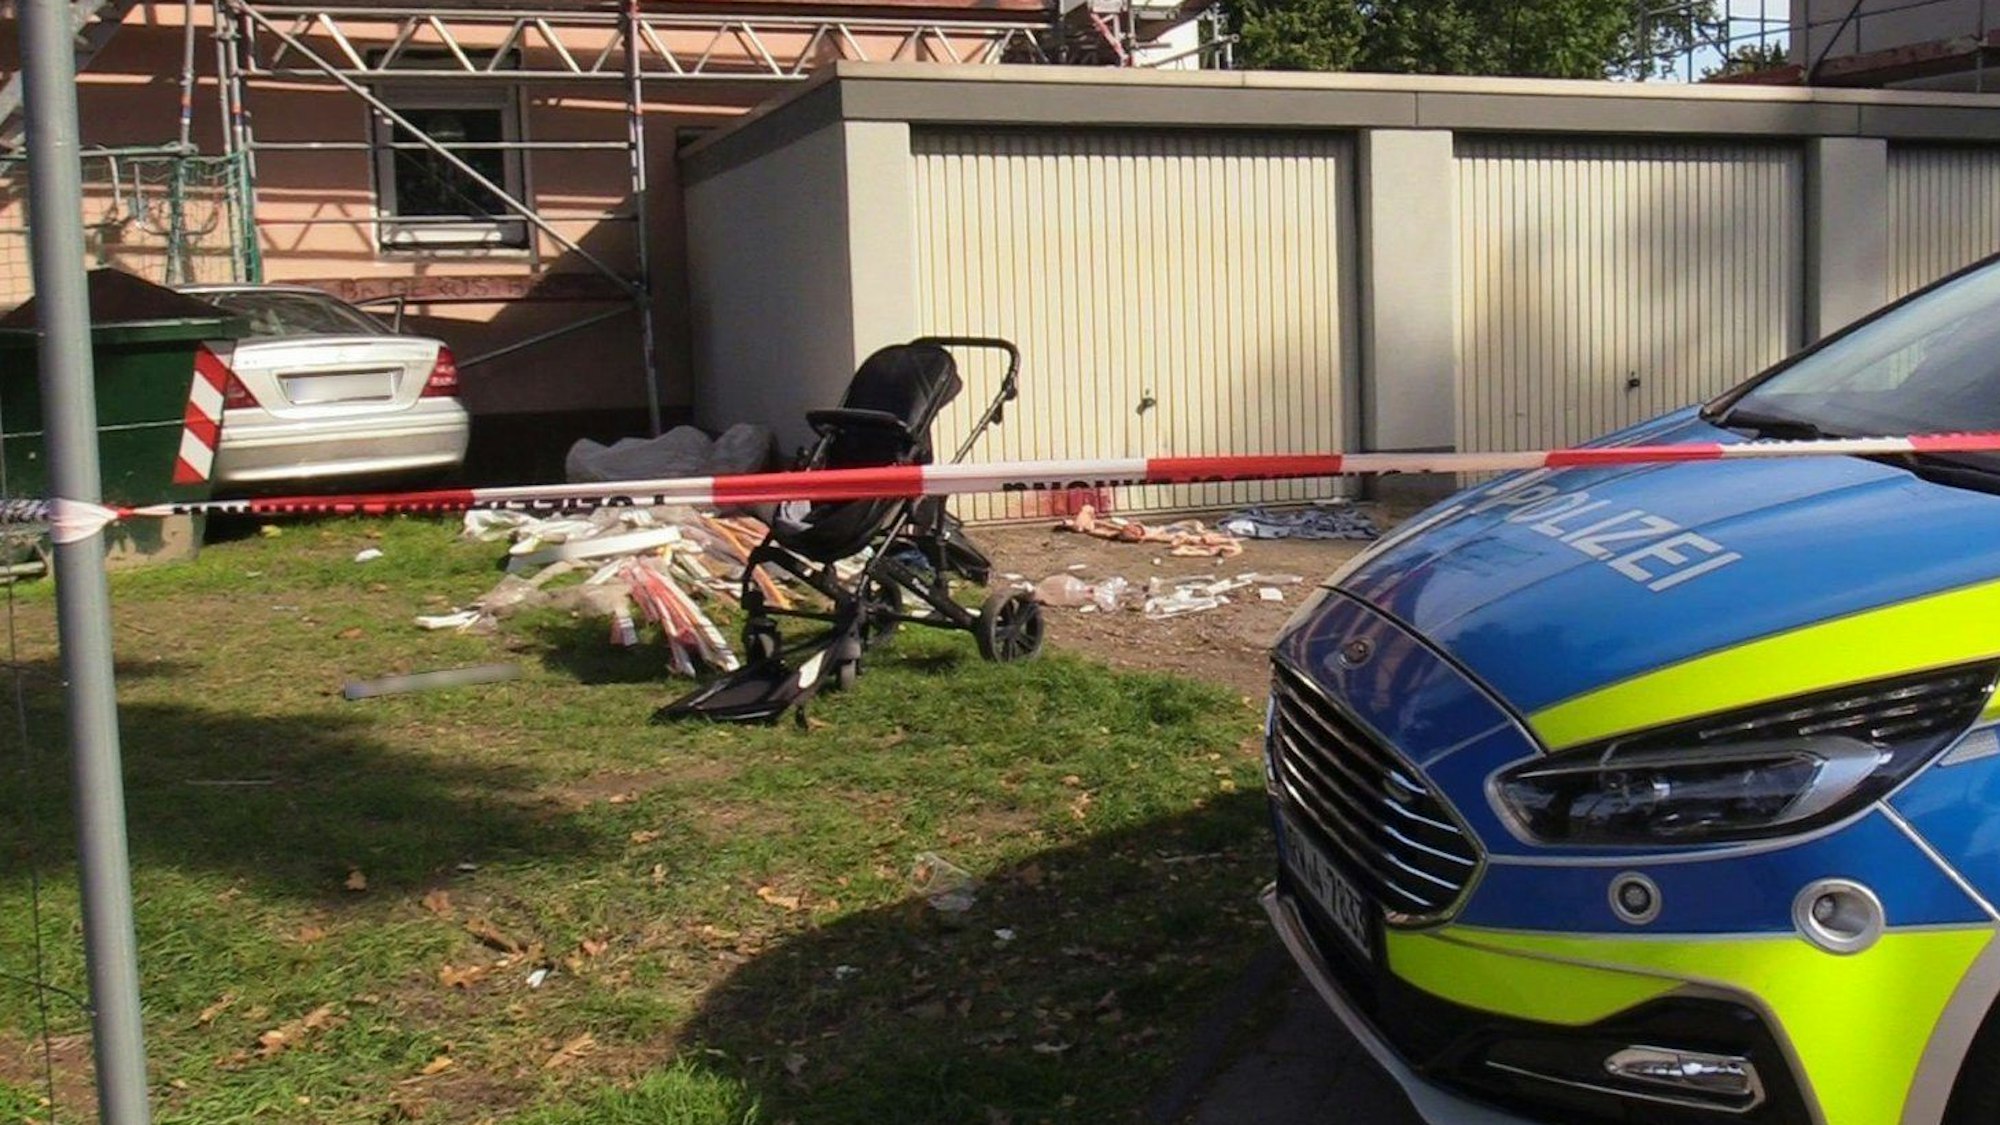 Ein beschädigter Kinderwagen steht auf einem Rasen neben mehreren Garagen, dahinter, an einer Hauswand, steht ein Auto. Die Polizei hat den Bereich mit Flatterband abgesperrt.